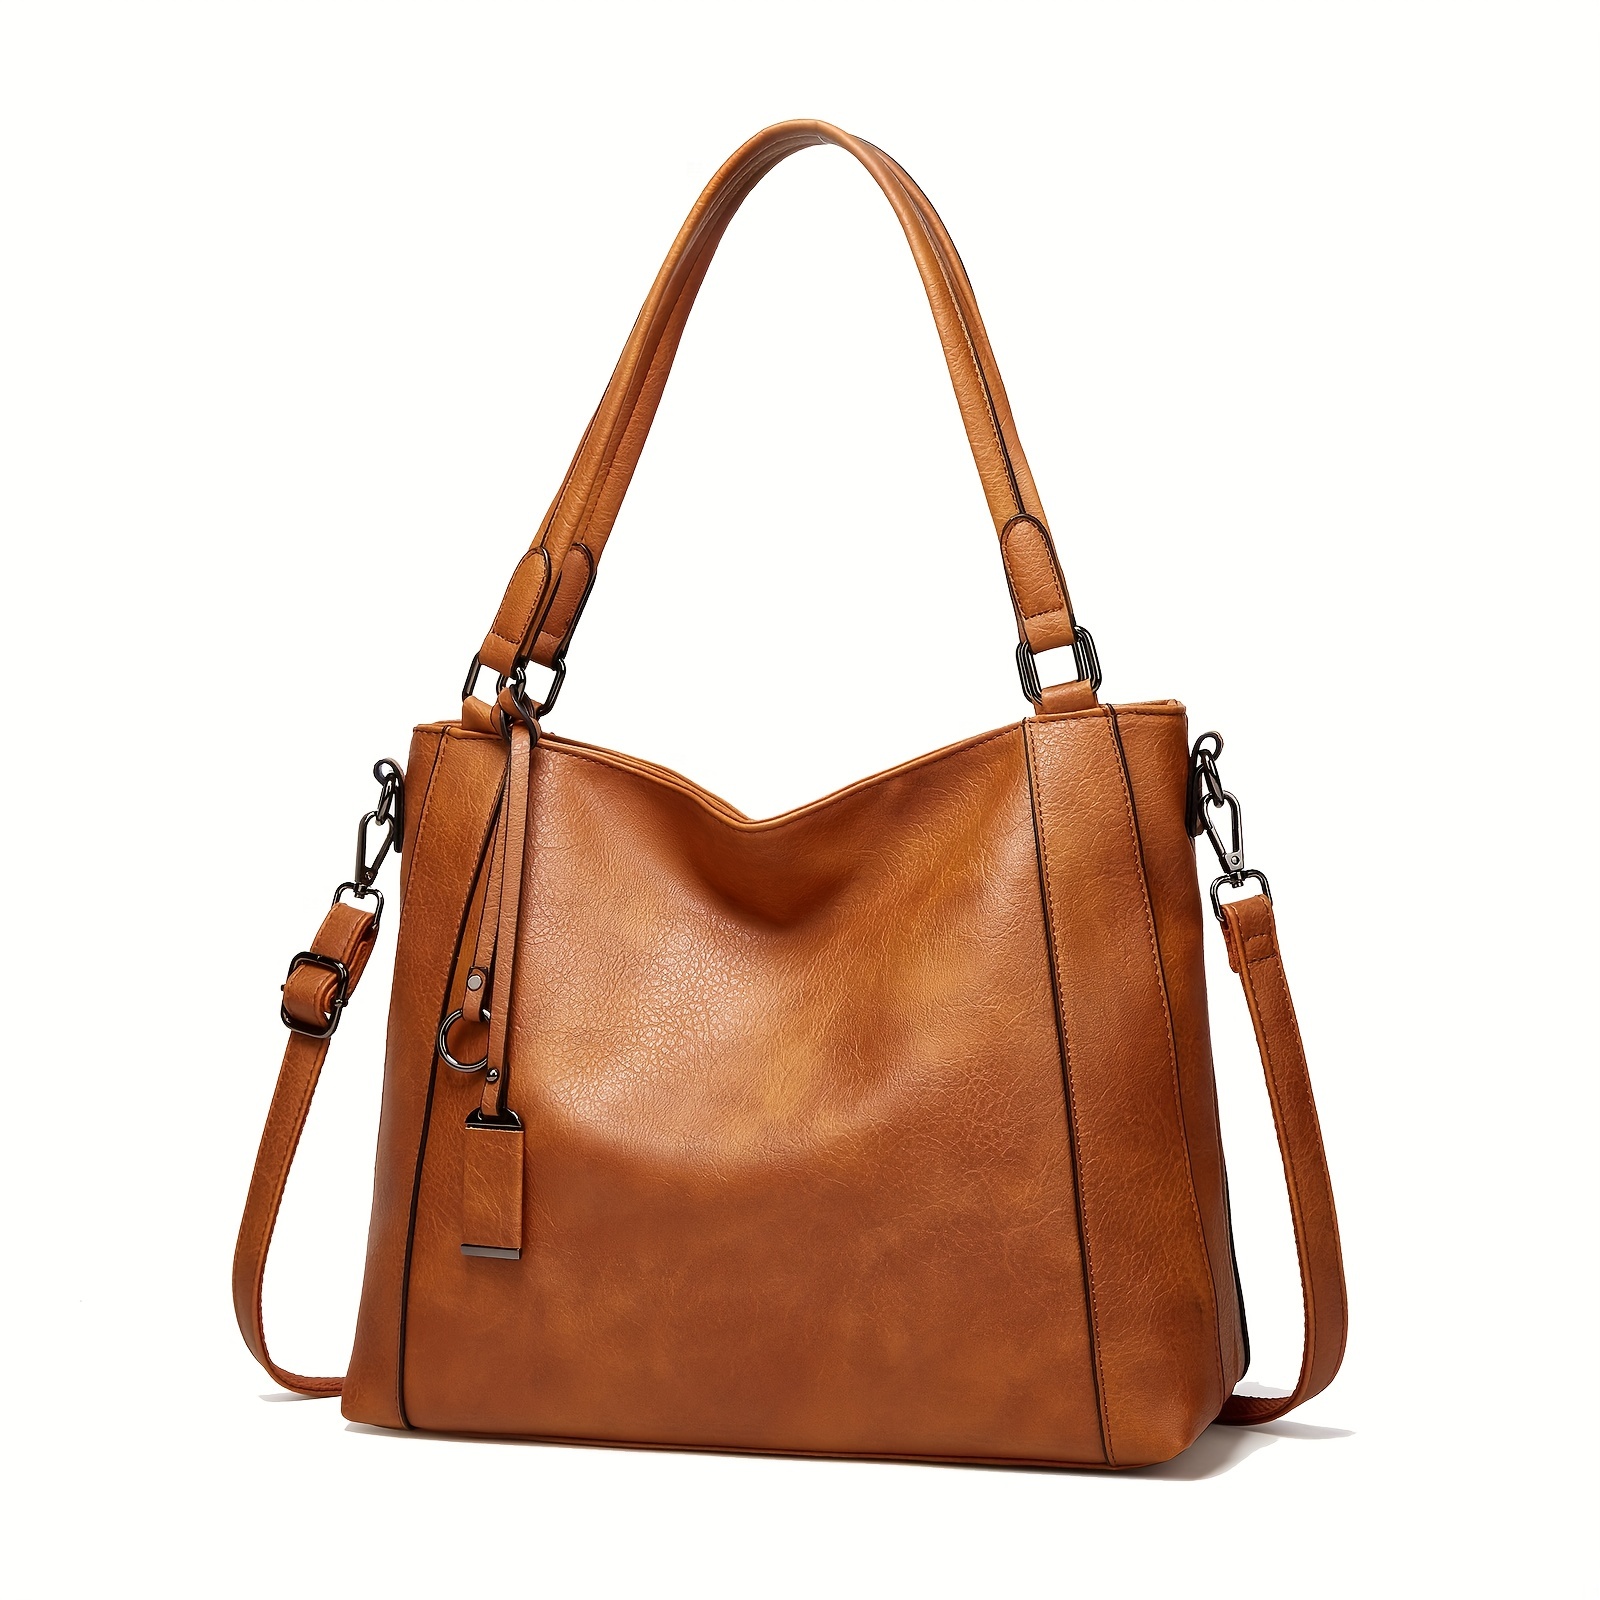 Designer Leather Handbags in Australia